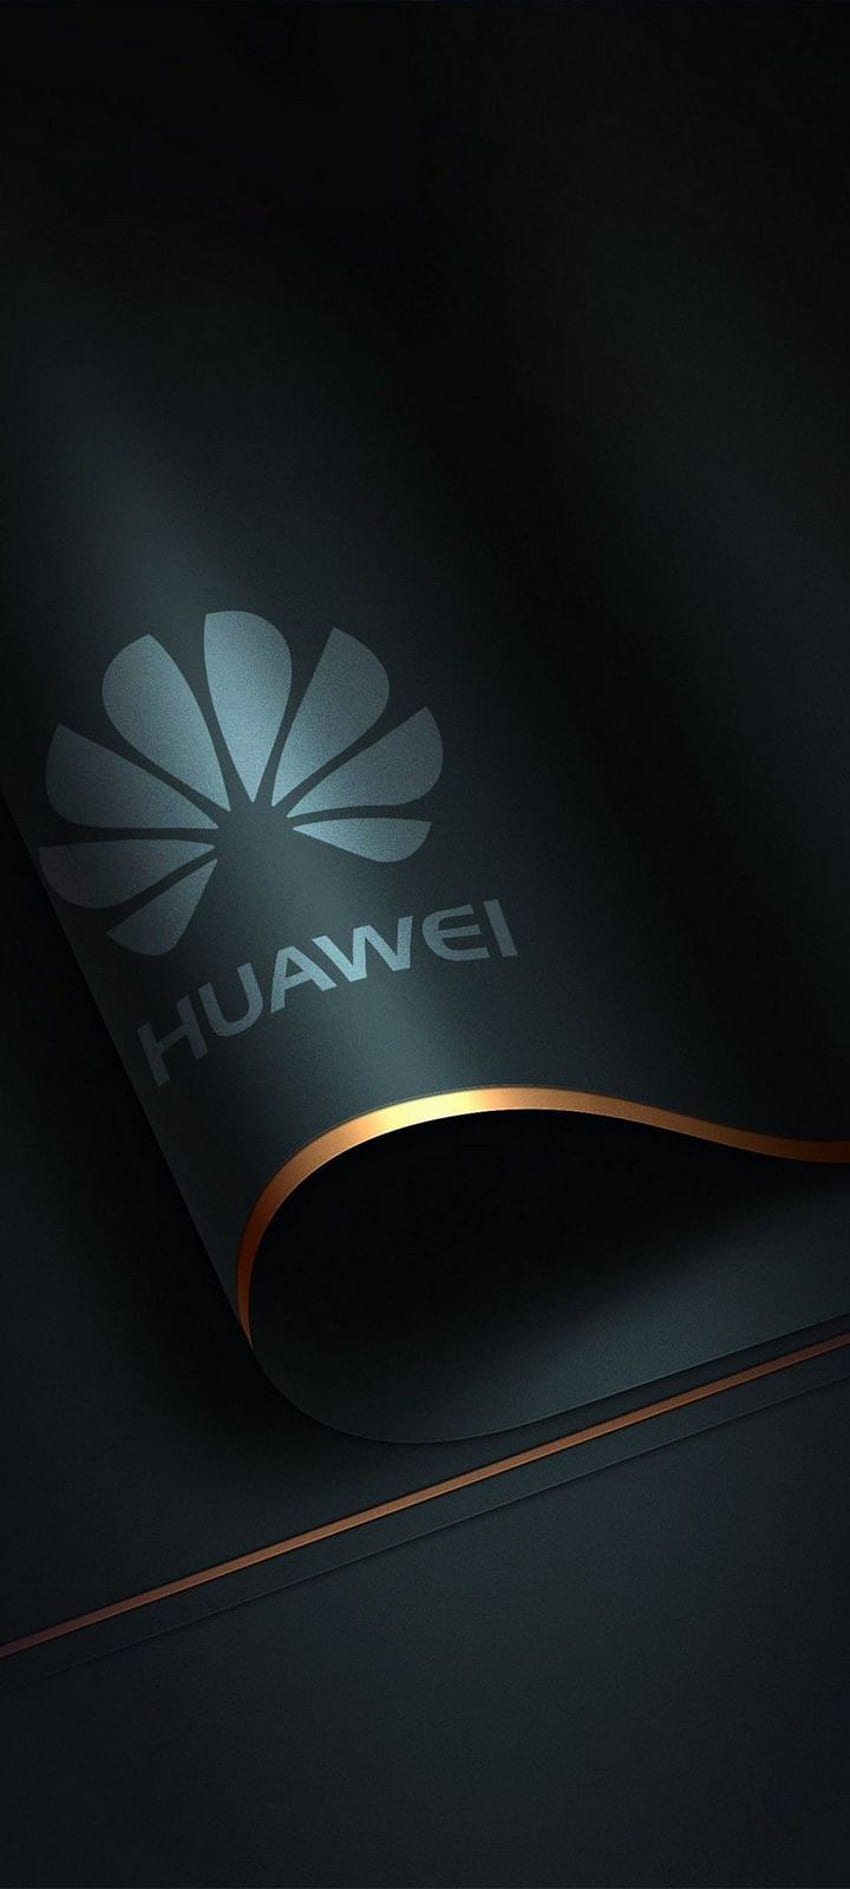 Huawei Hd Wallpapers | Pxfuel